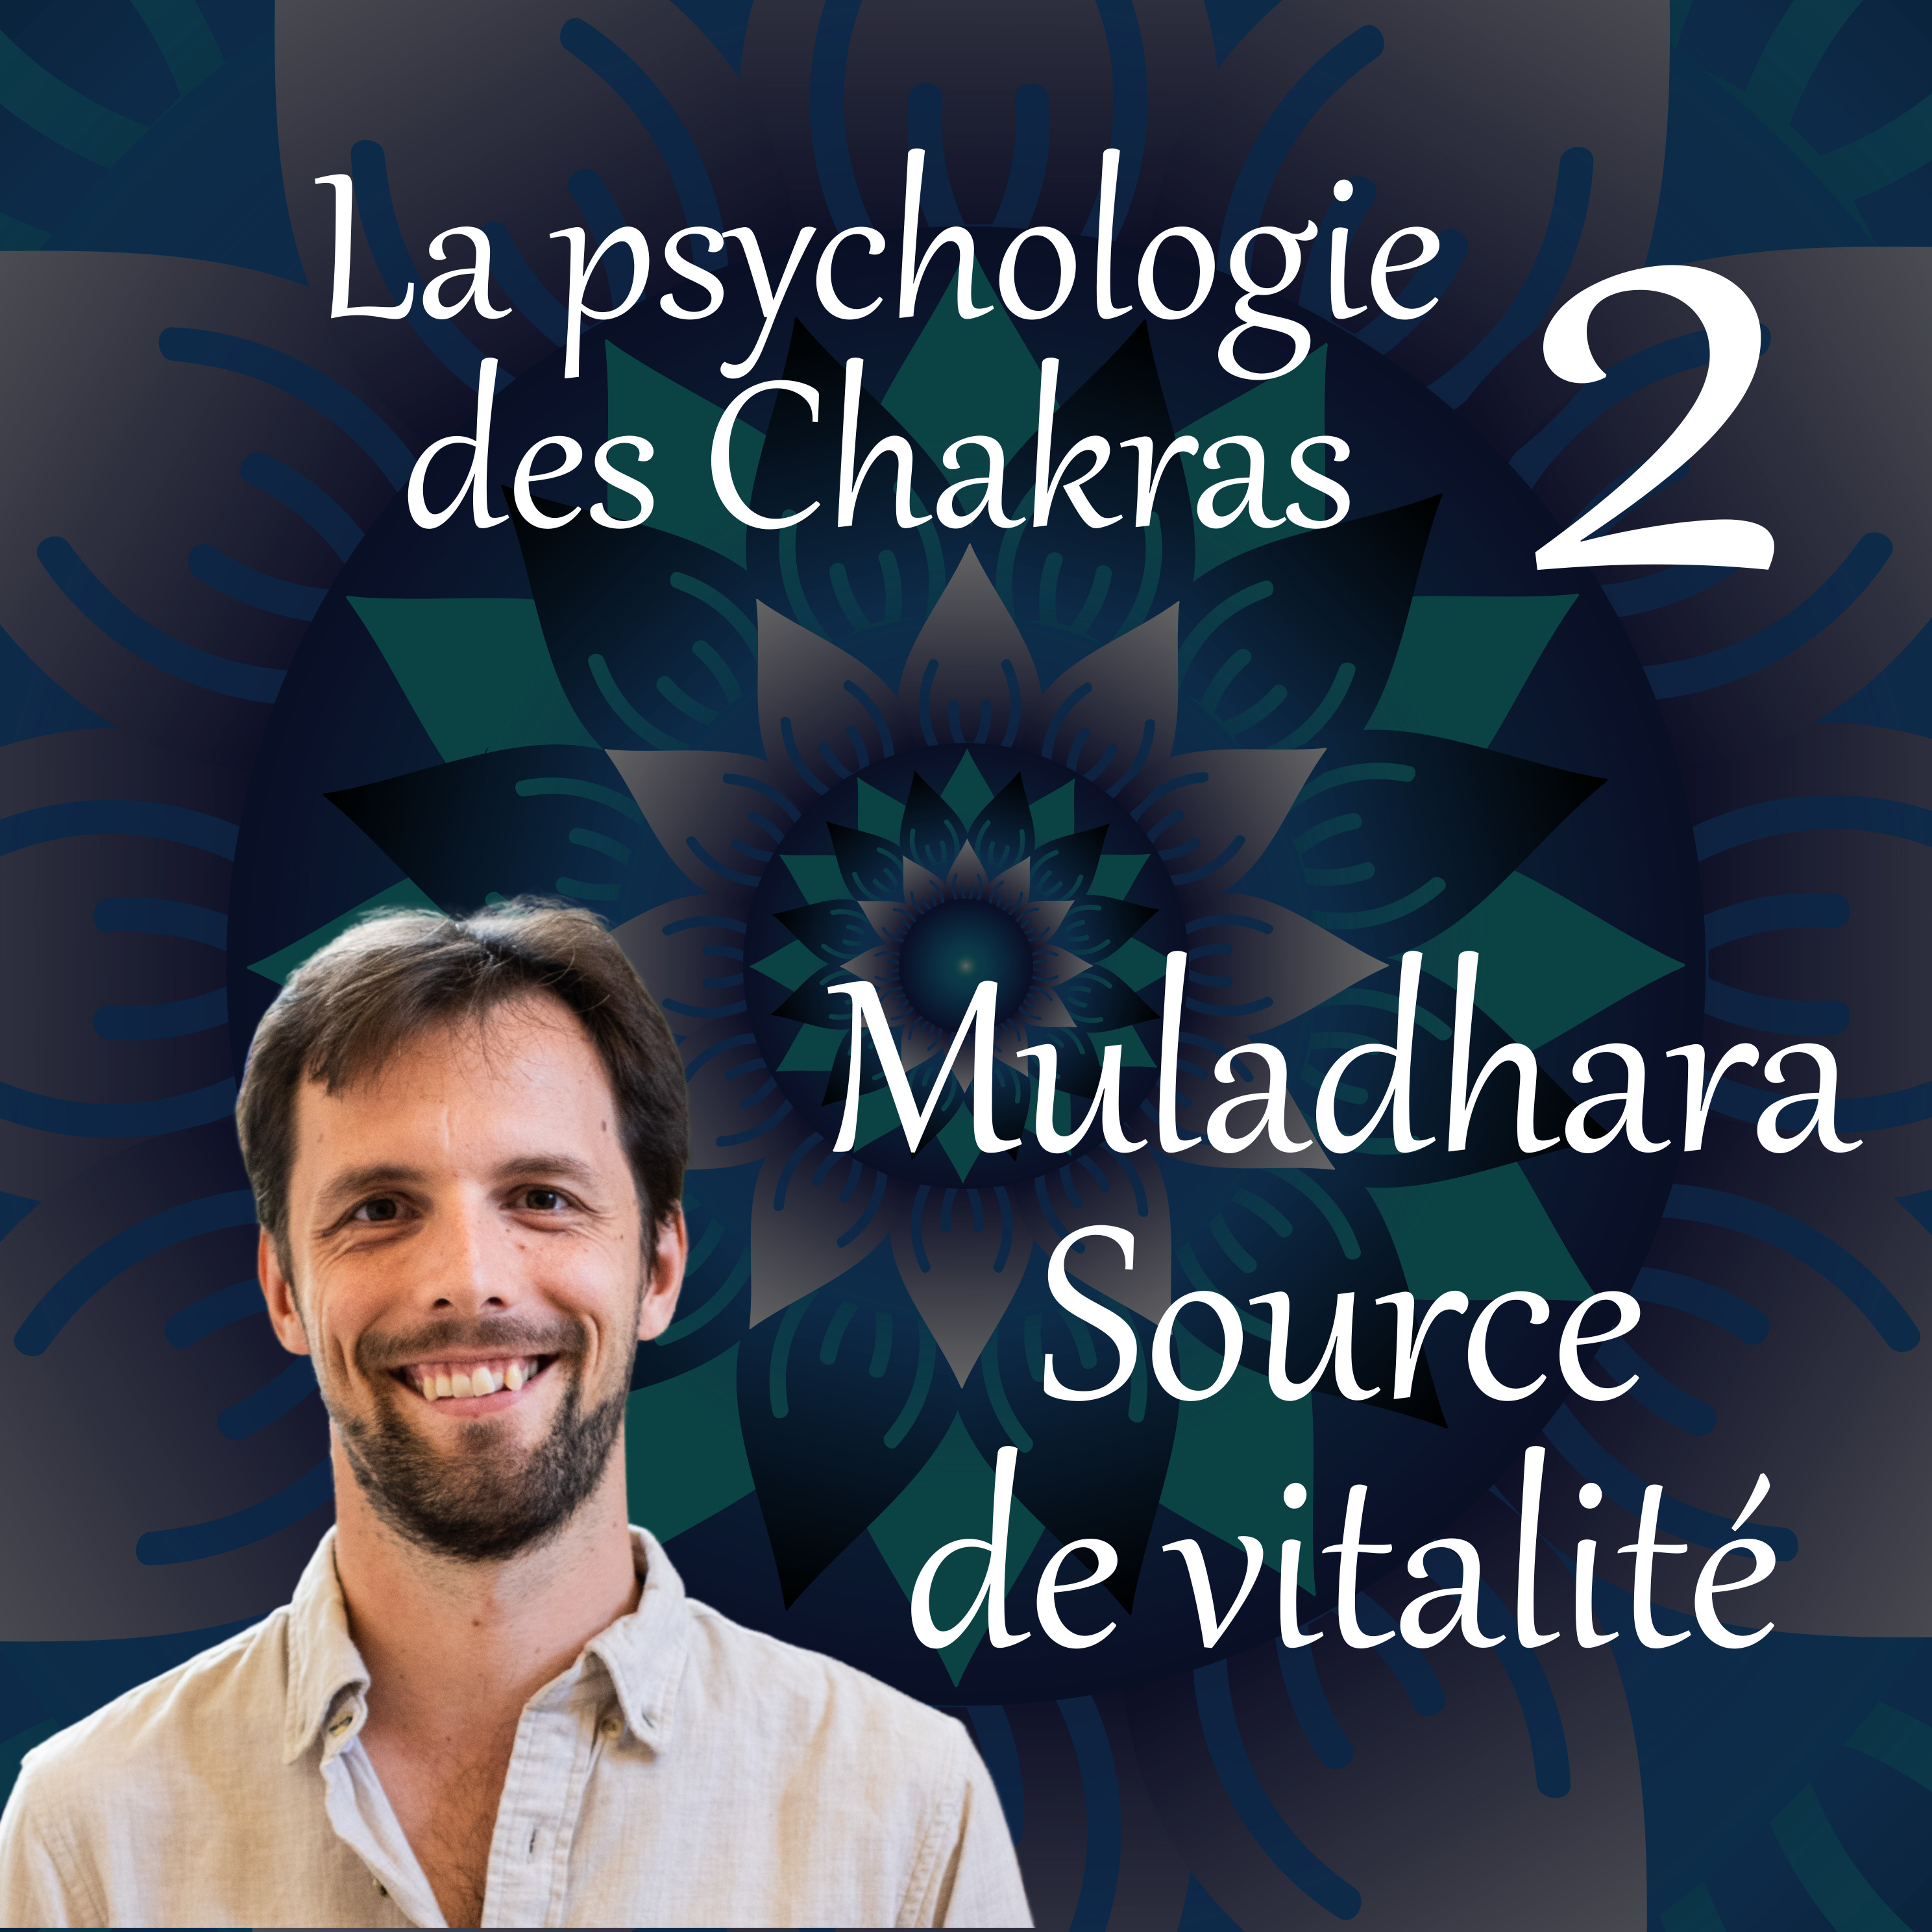 Source de vitalité – La psychologie des chakras 02